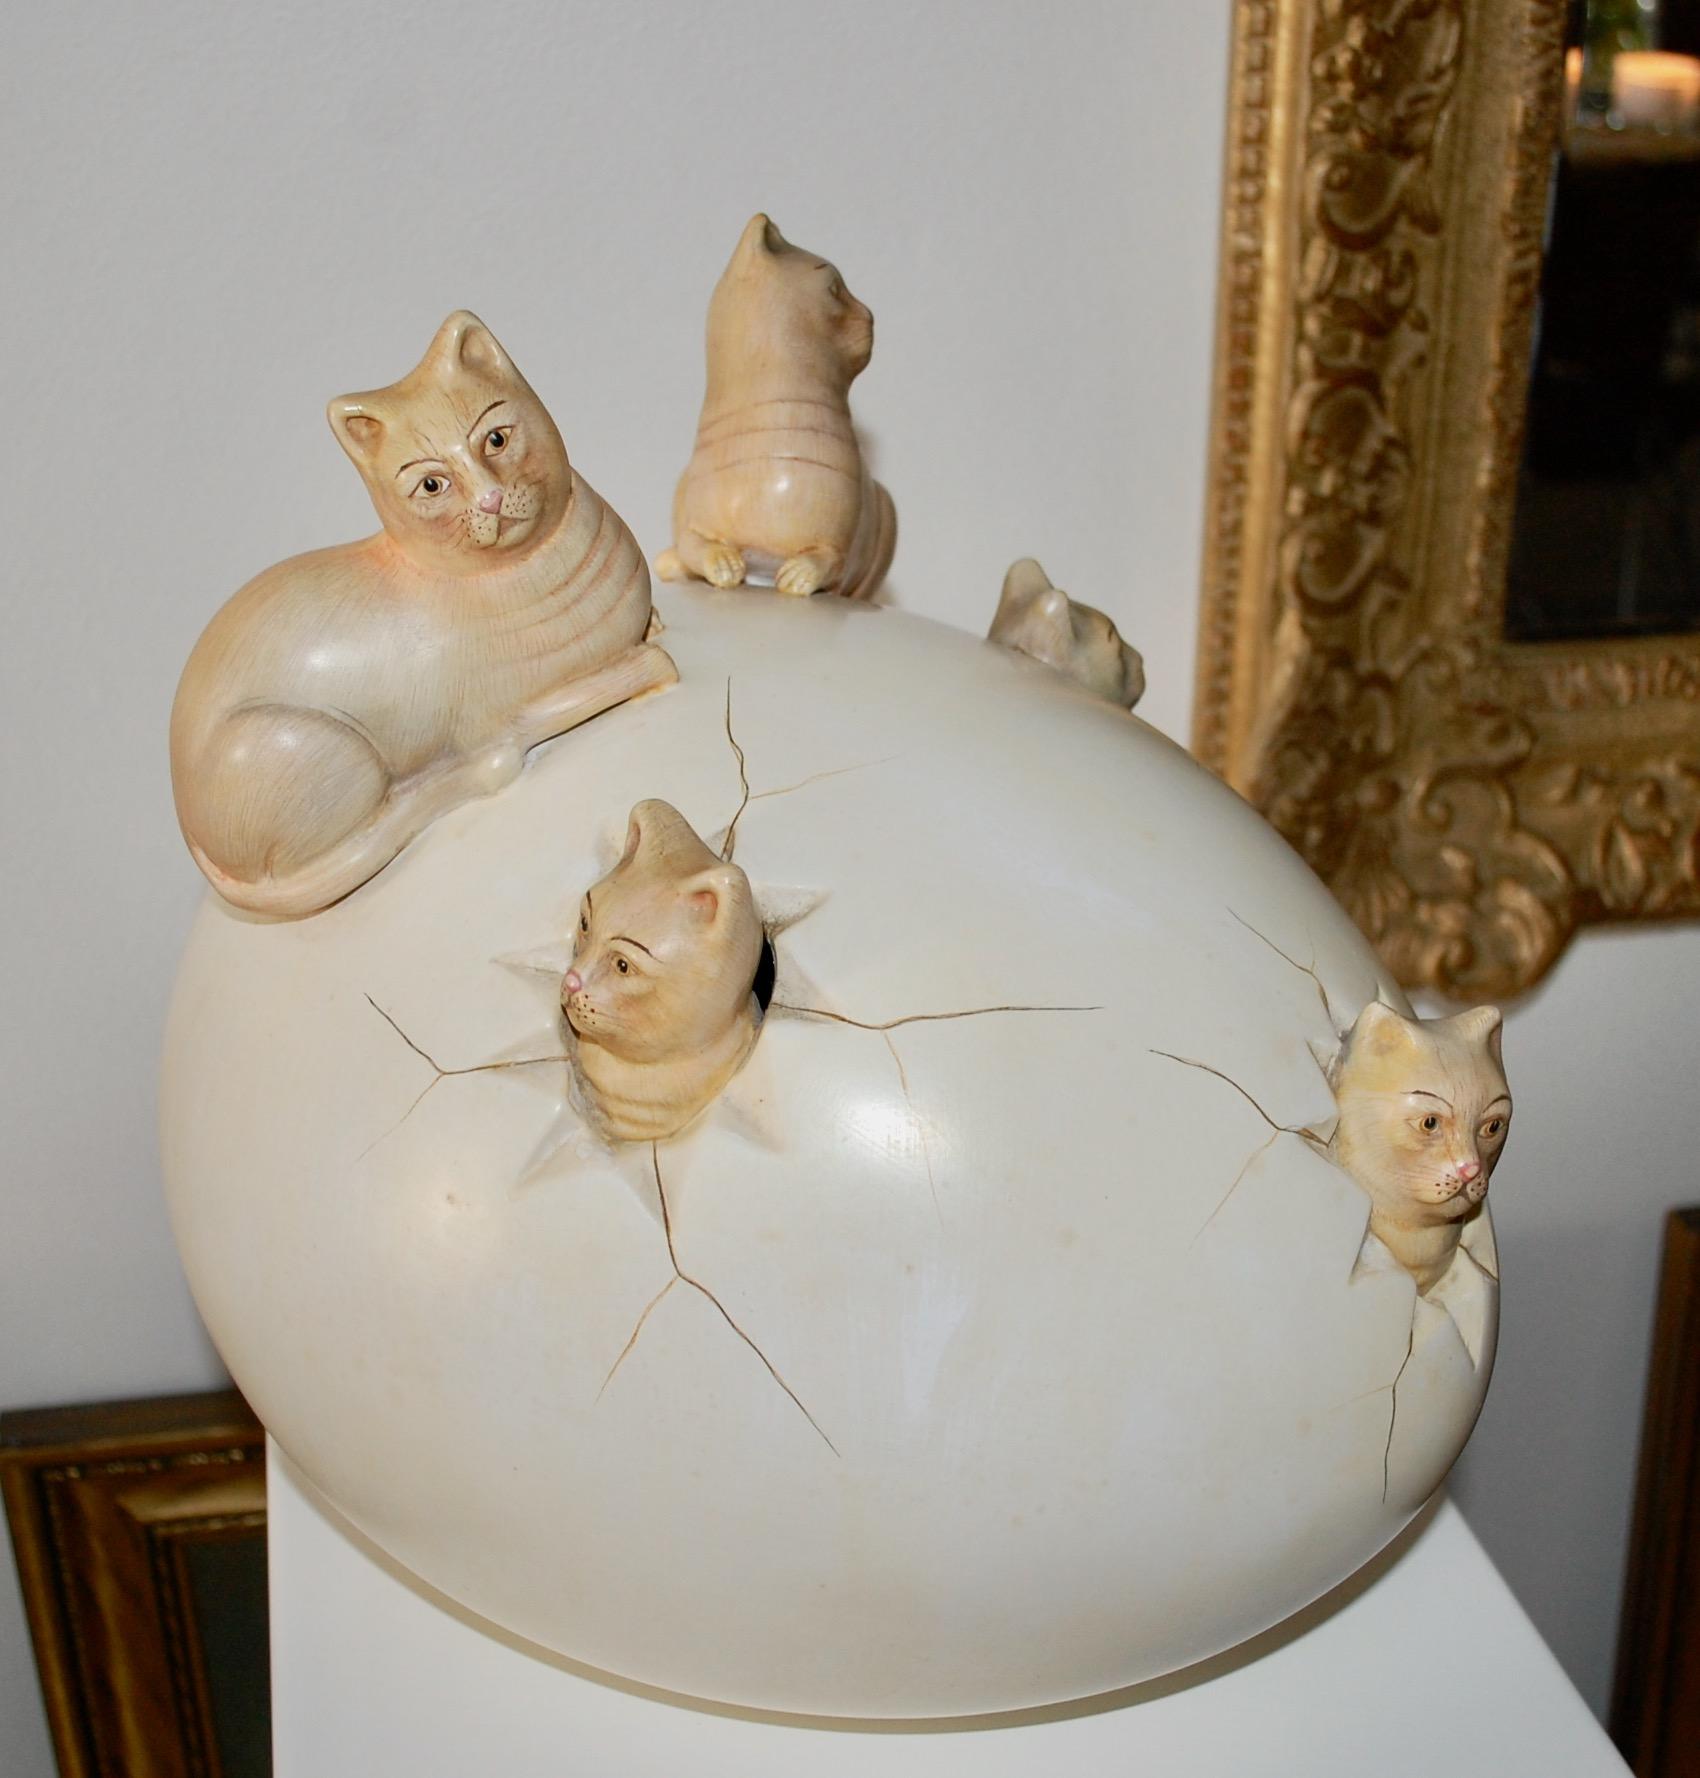  Les chats fuyant de la céramique d'un œuf - Contemporain Sculpture par Sergio Bustamante